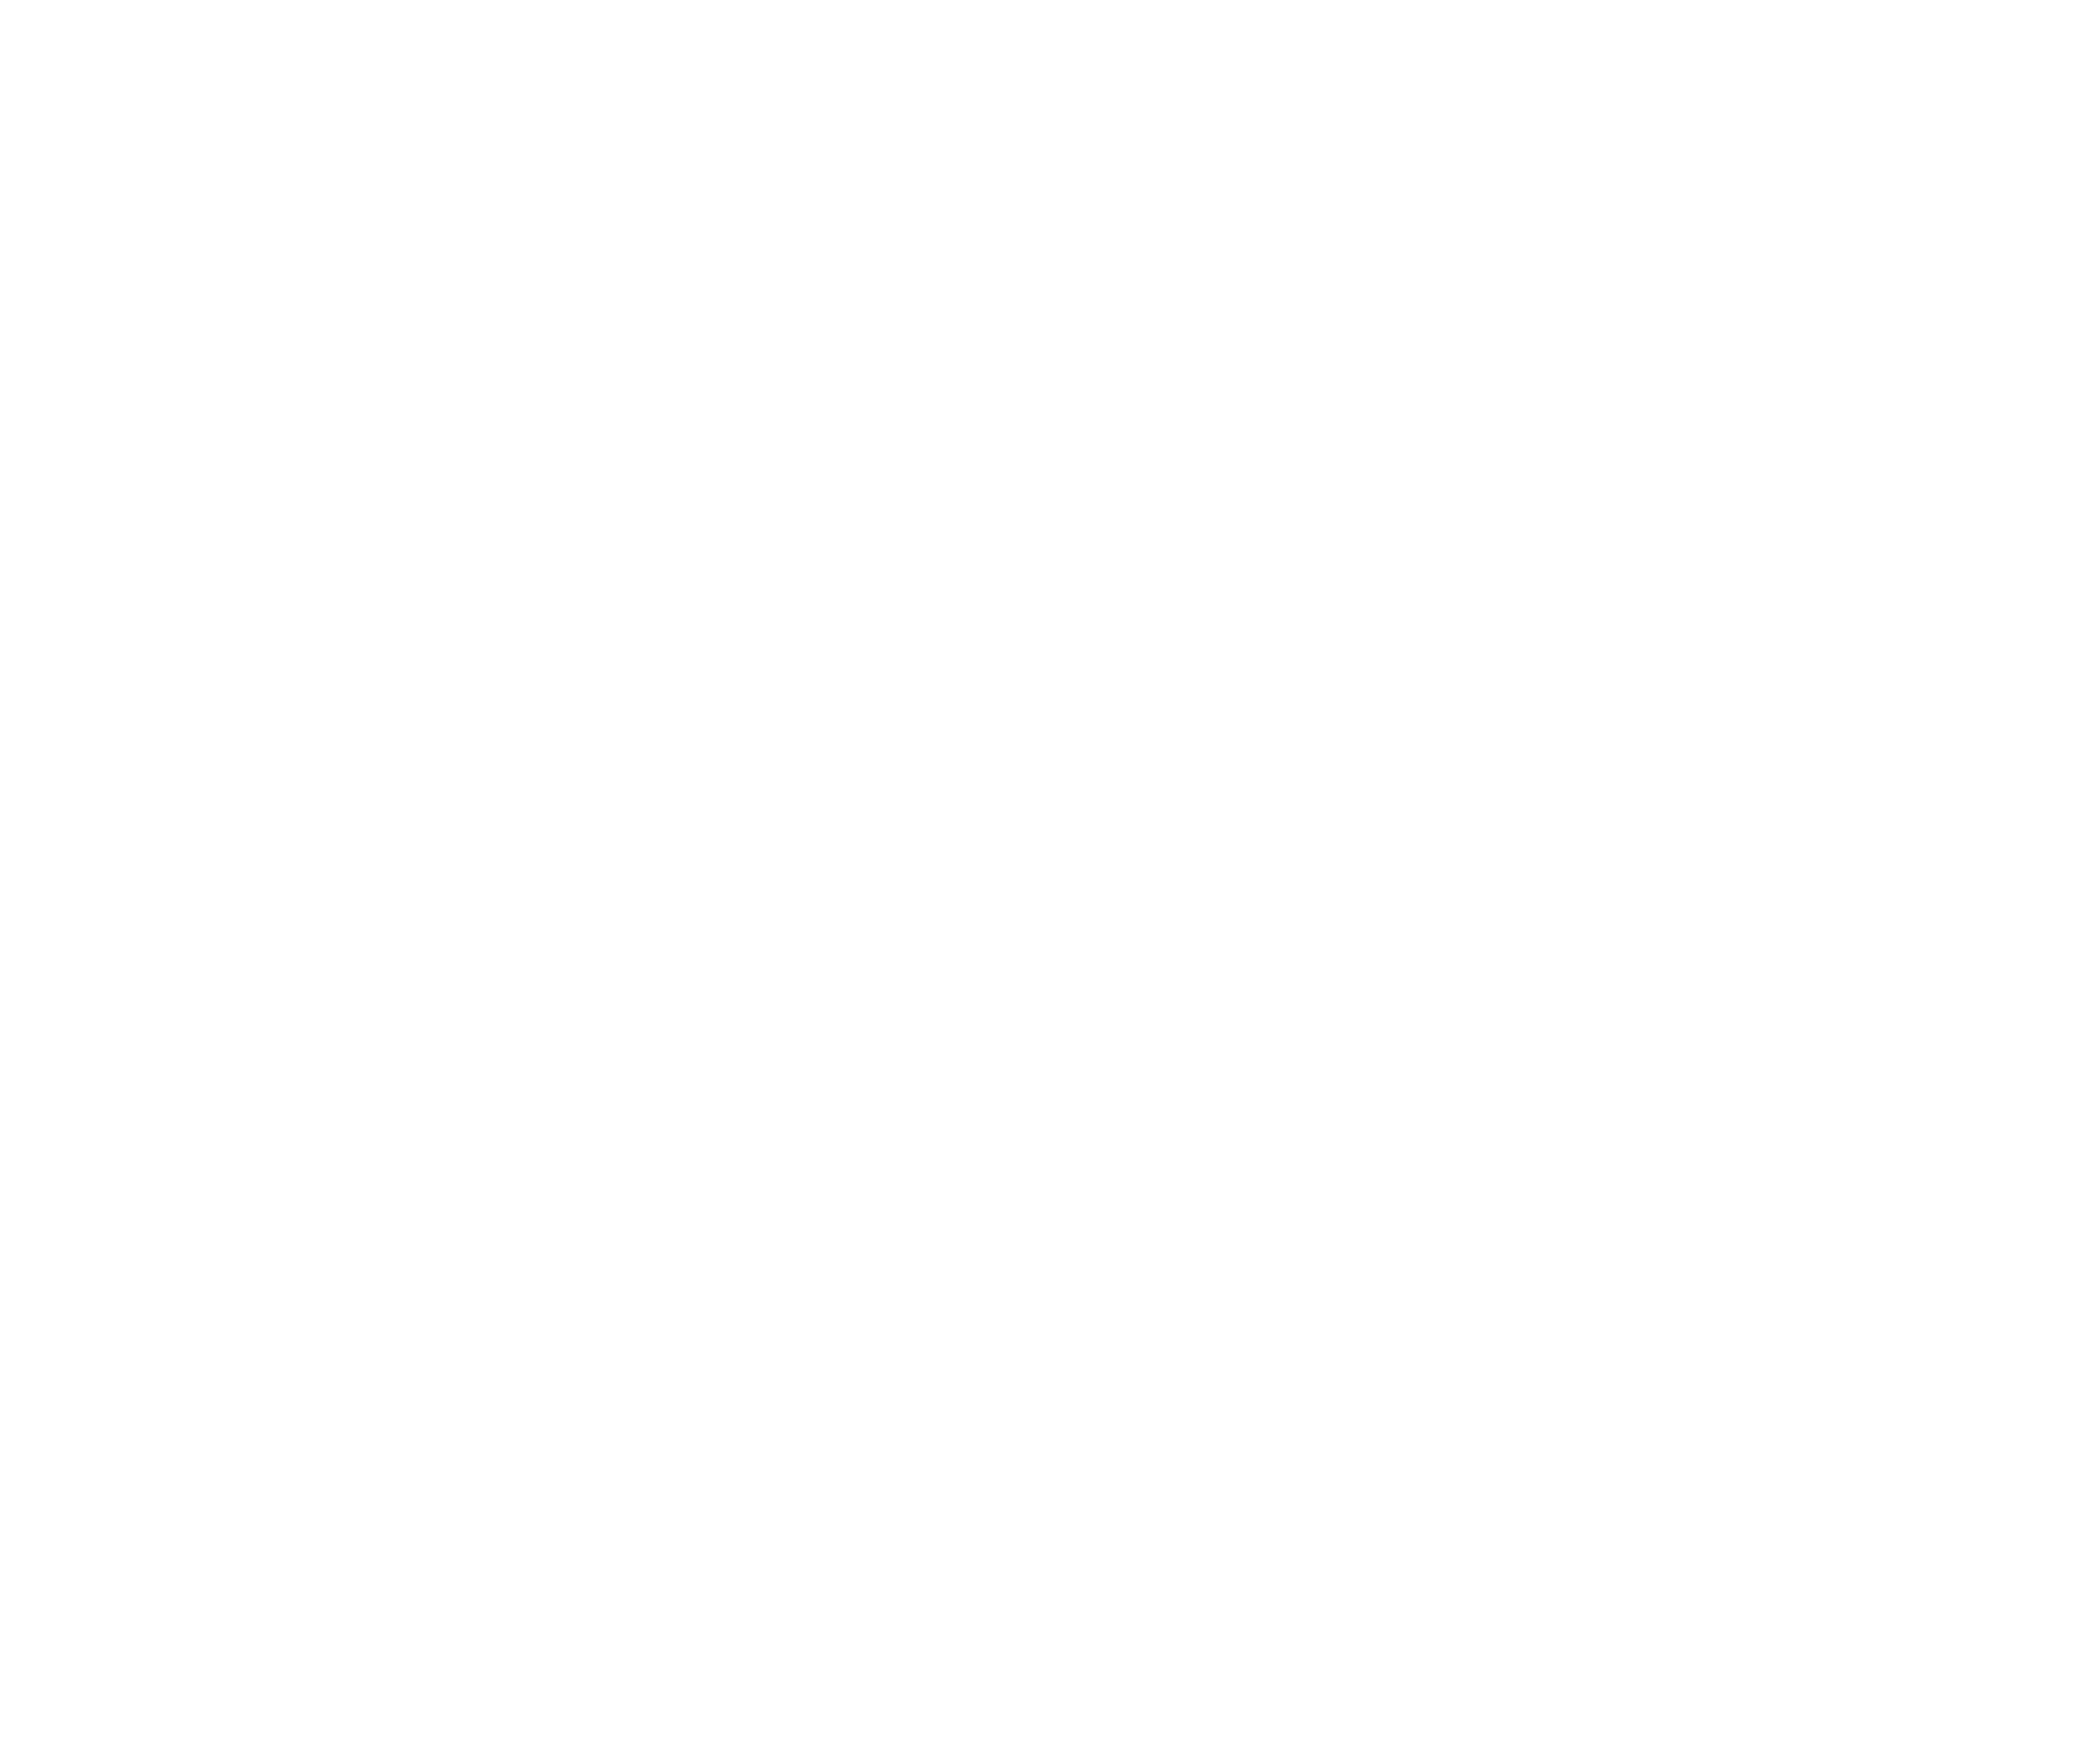 Dominque DeBay